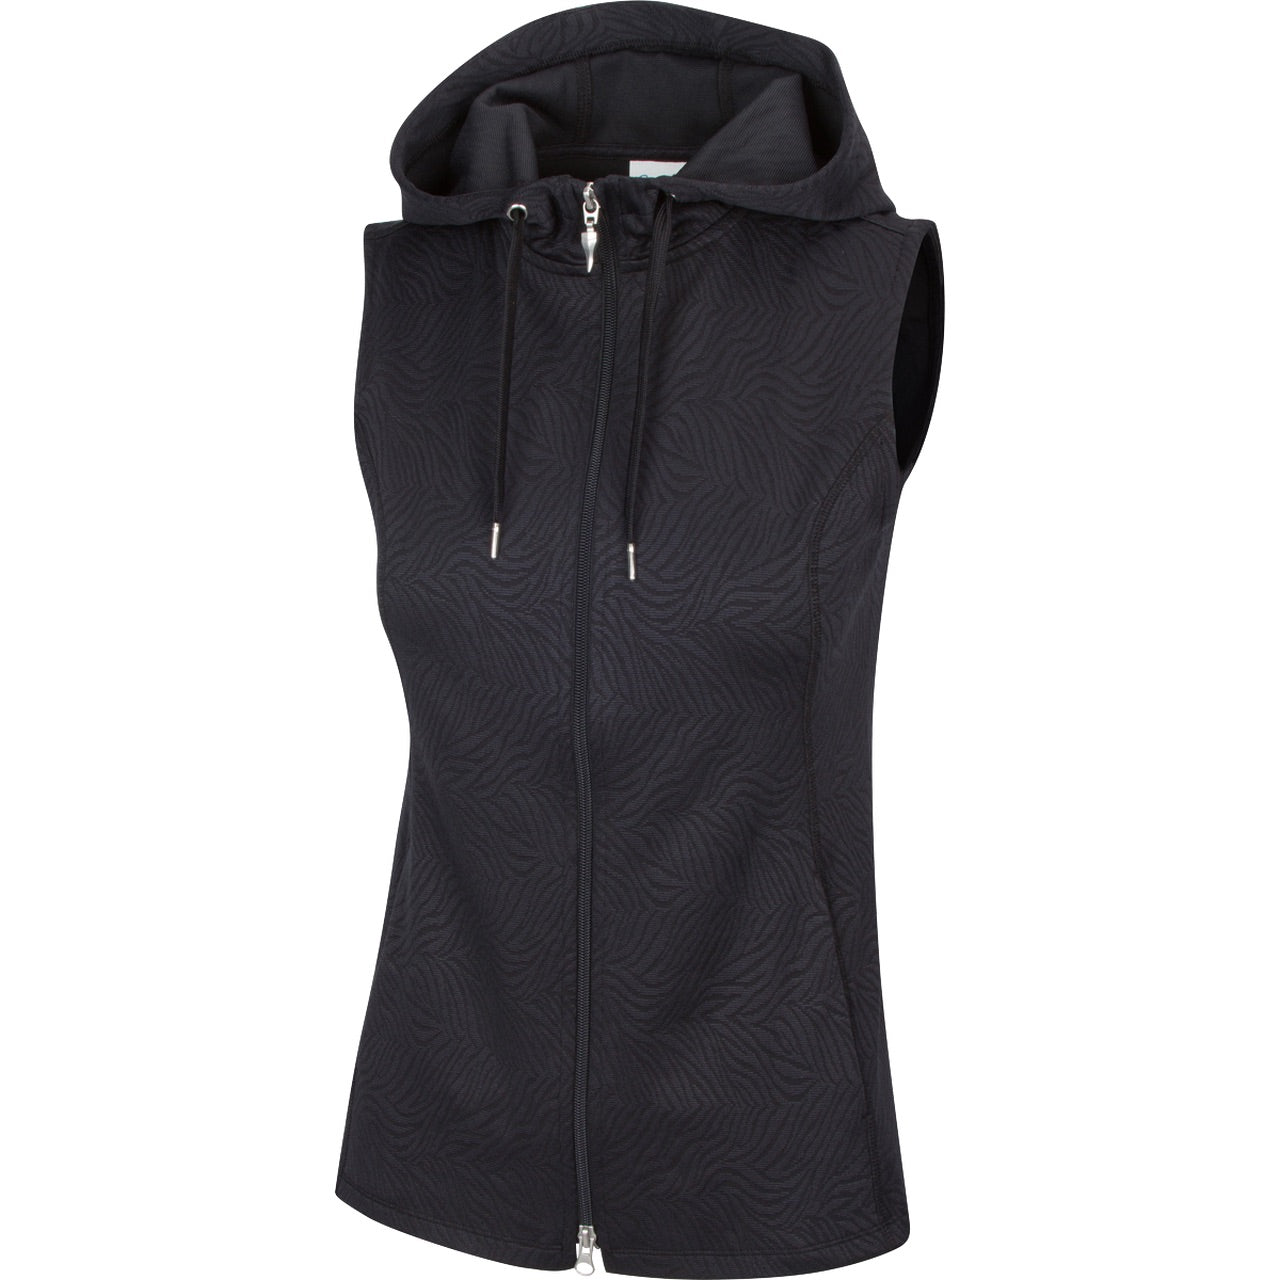 Greg Norman Women's Jacquard Hooded Vest 2021